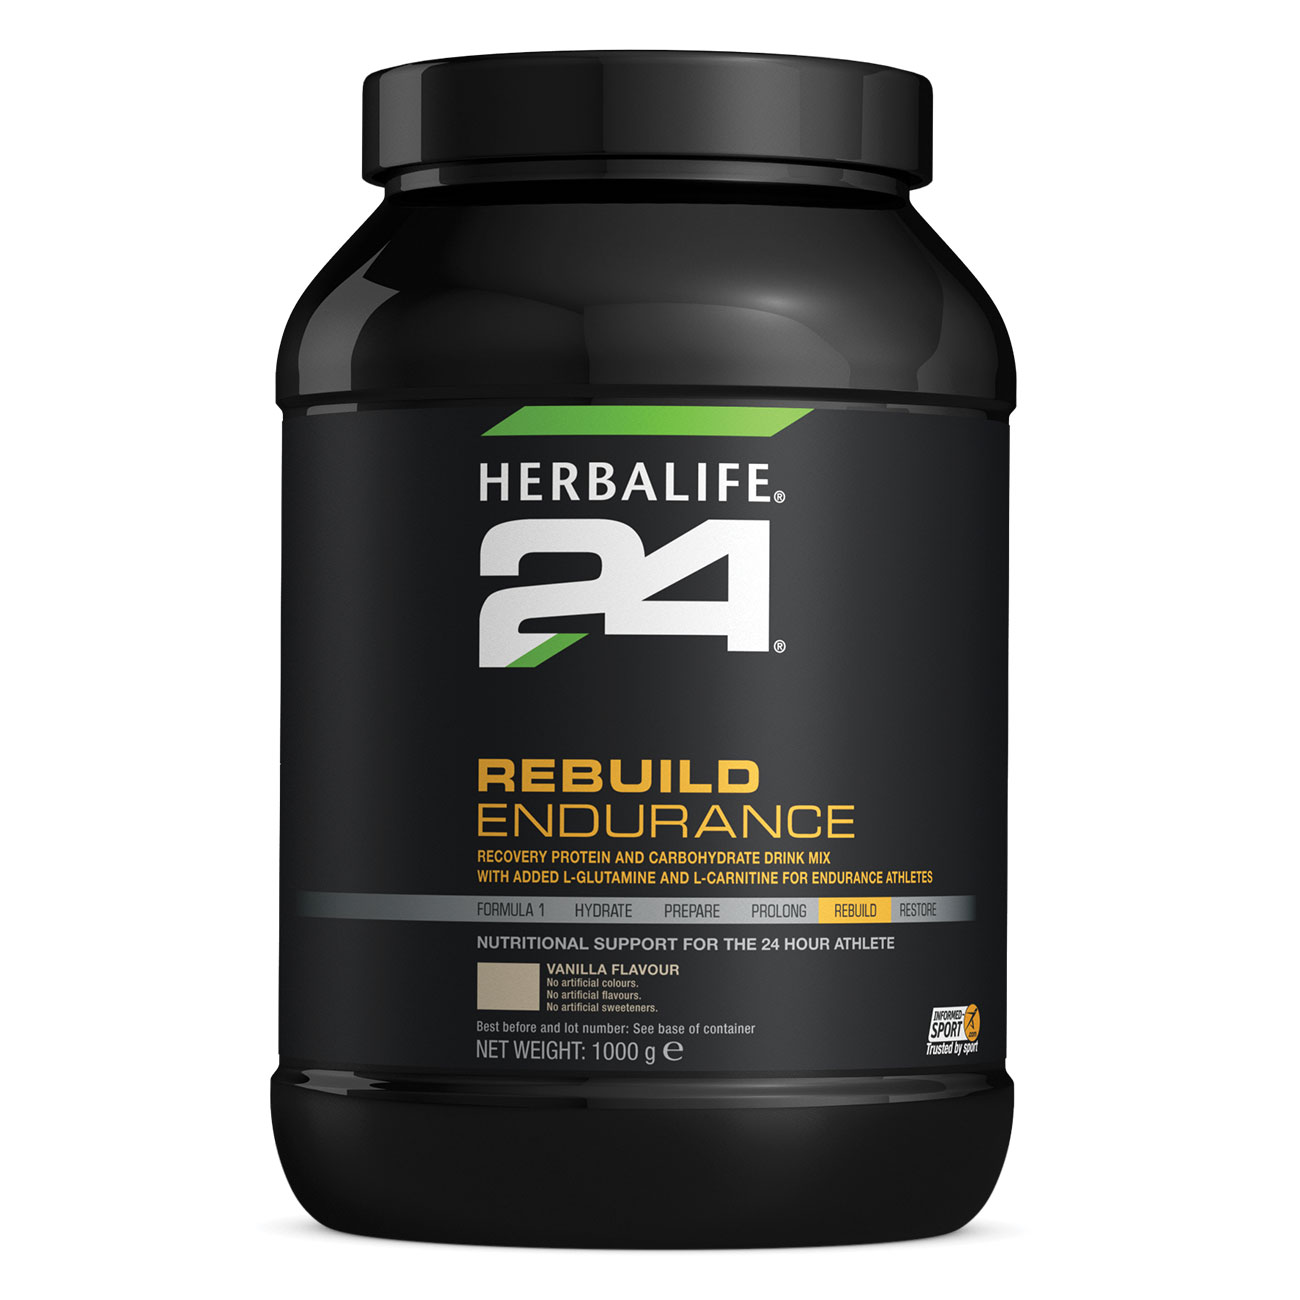 Herbalife24® Rebuild Endurance - Próteindrykkur - Vanillubragð - Mynd af vöru